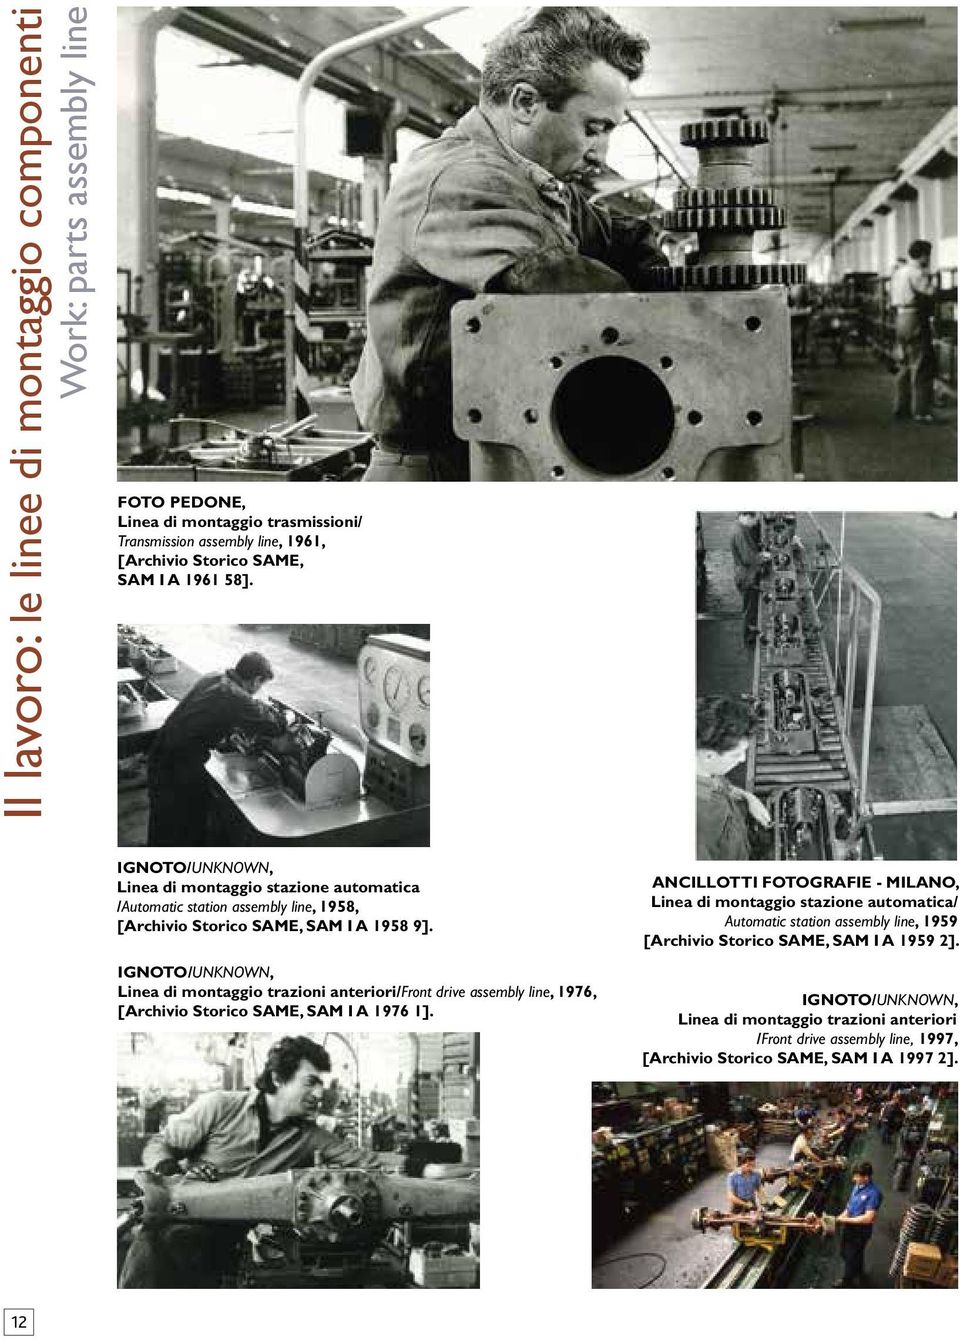 Linea di montaggio trazioni anteriori/front drive assembly line, 1976, [Archivio Storico SAME, SAM I A 1976 1].